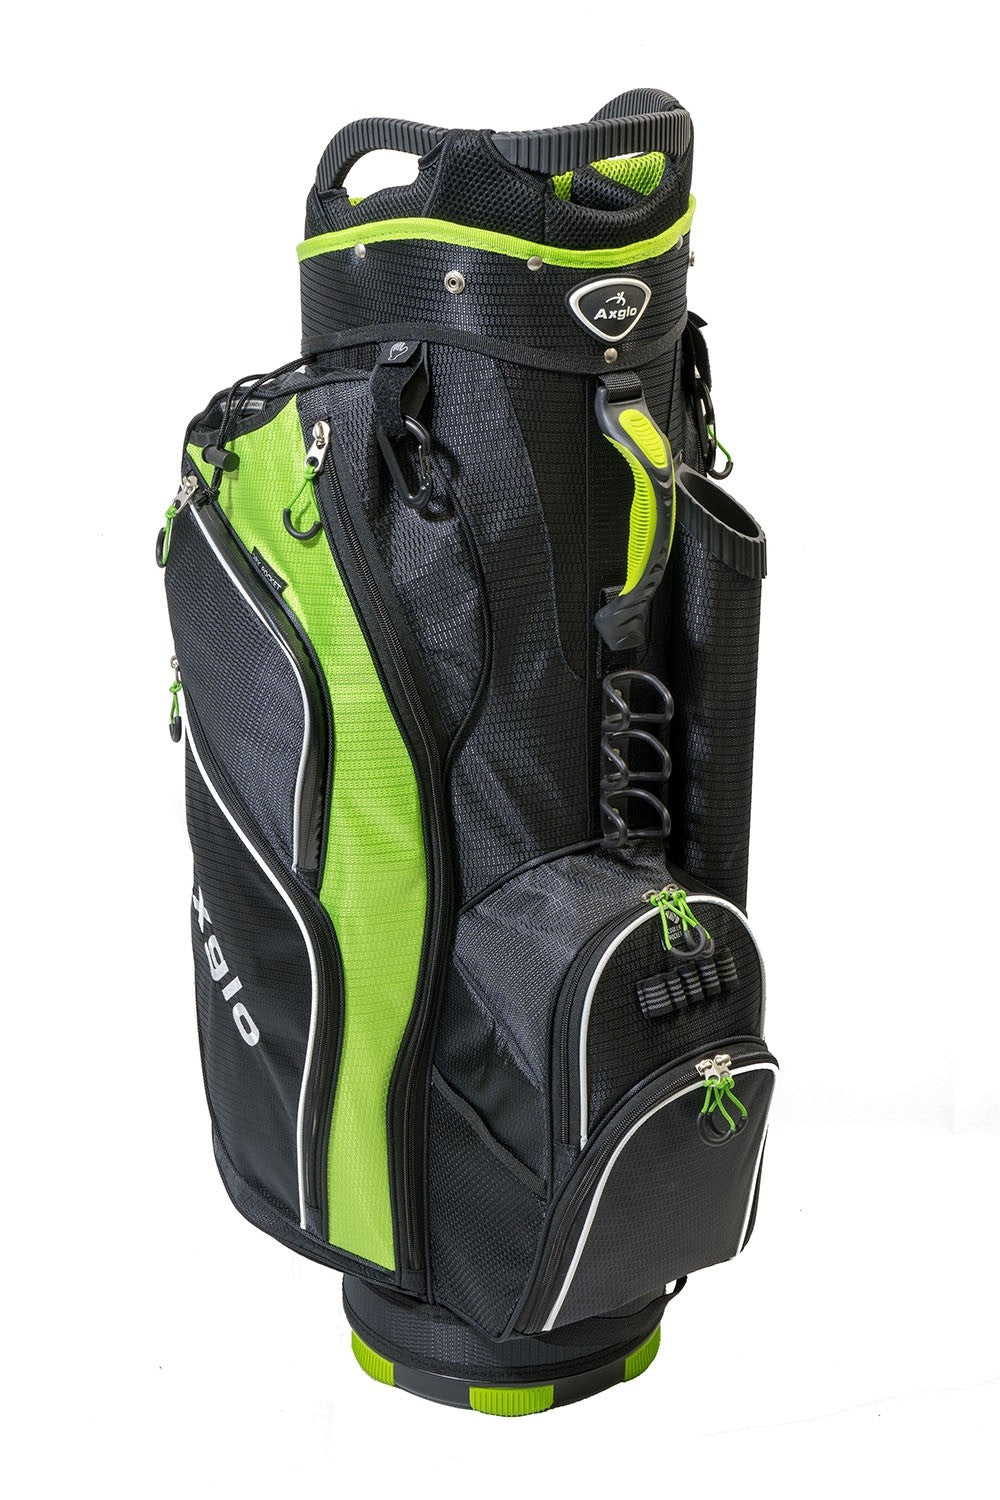 Taylormade Flextech Lite Golf Stand Bag  Green  Andrew Morris Golf